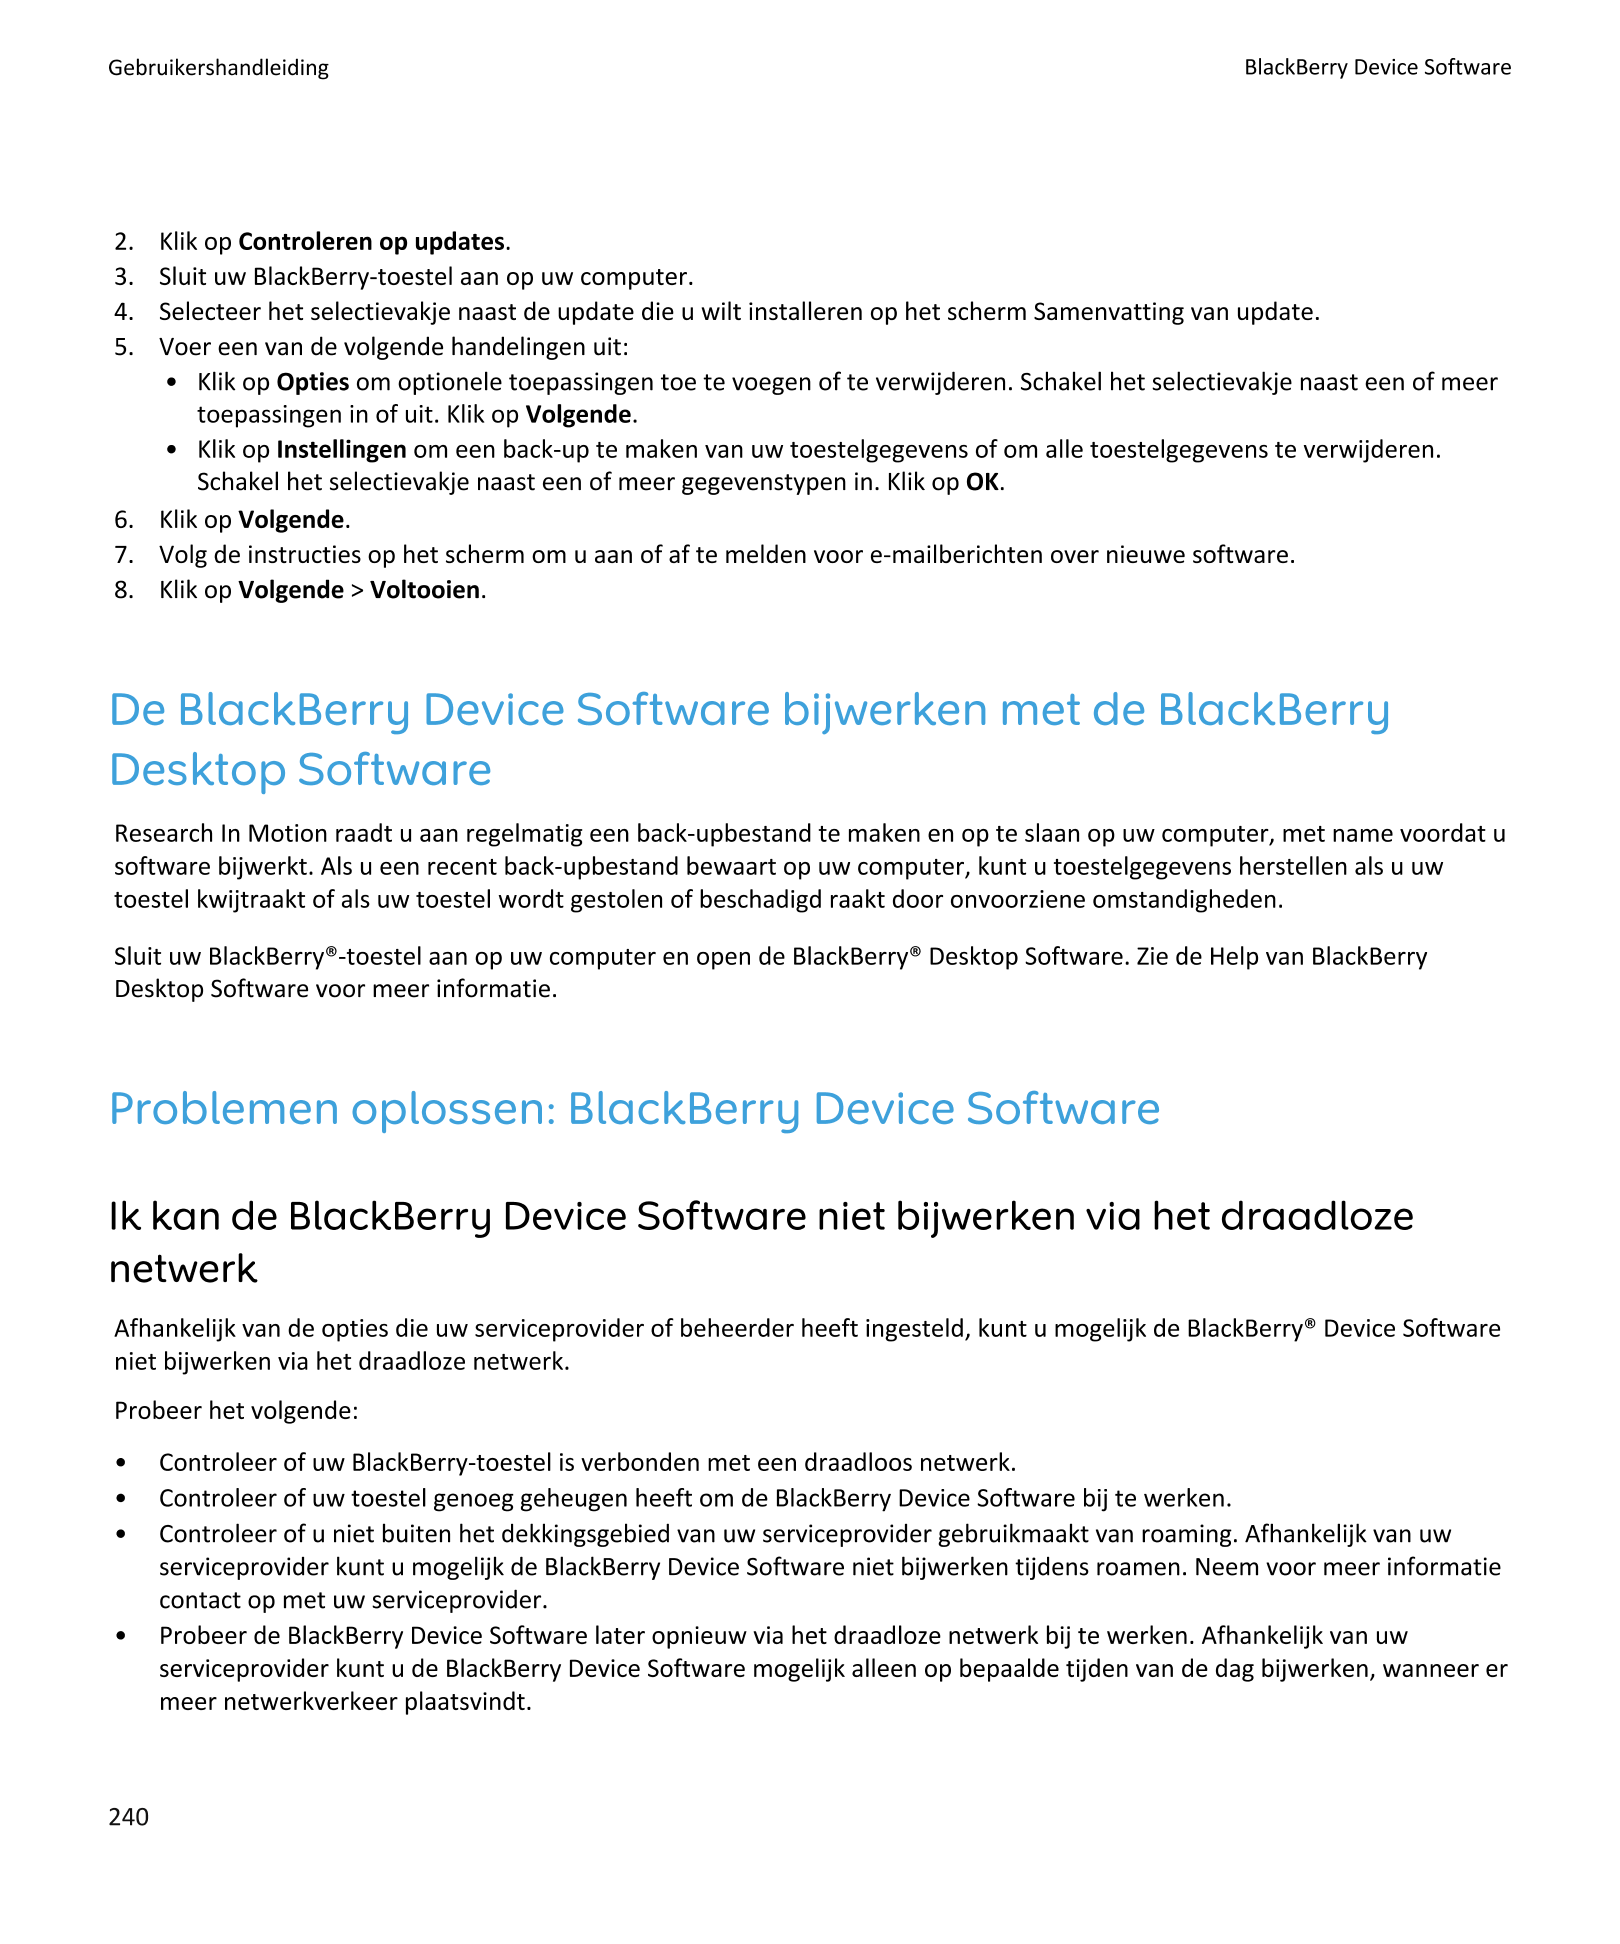 Gebruikershandleiding BlackBerry Device Software
2.    Klik op Controleren op updates.
3.    Sluit uw BlackBerry-toestel aan op 